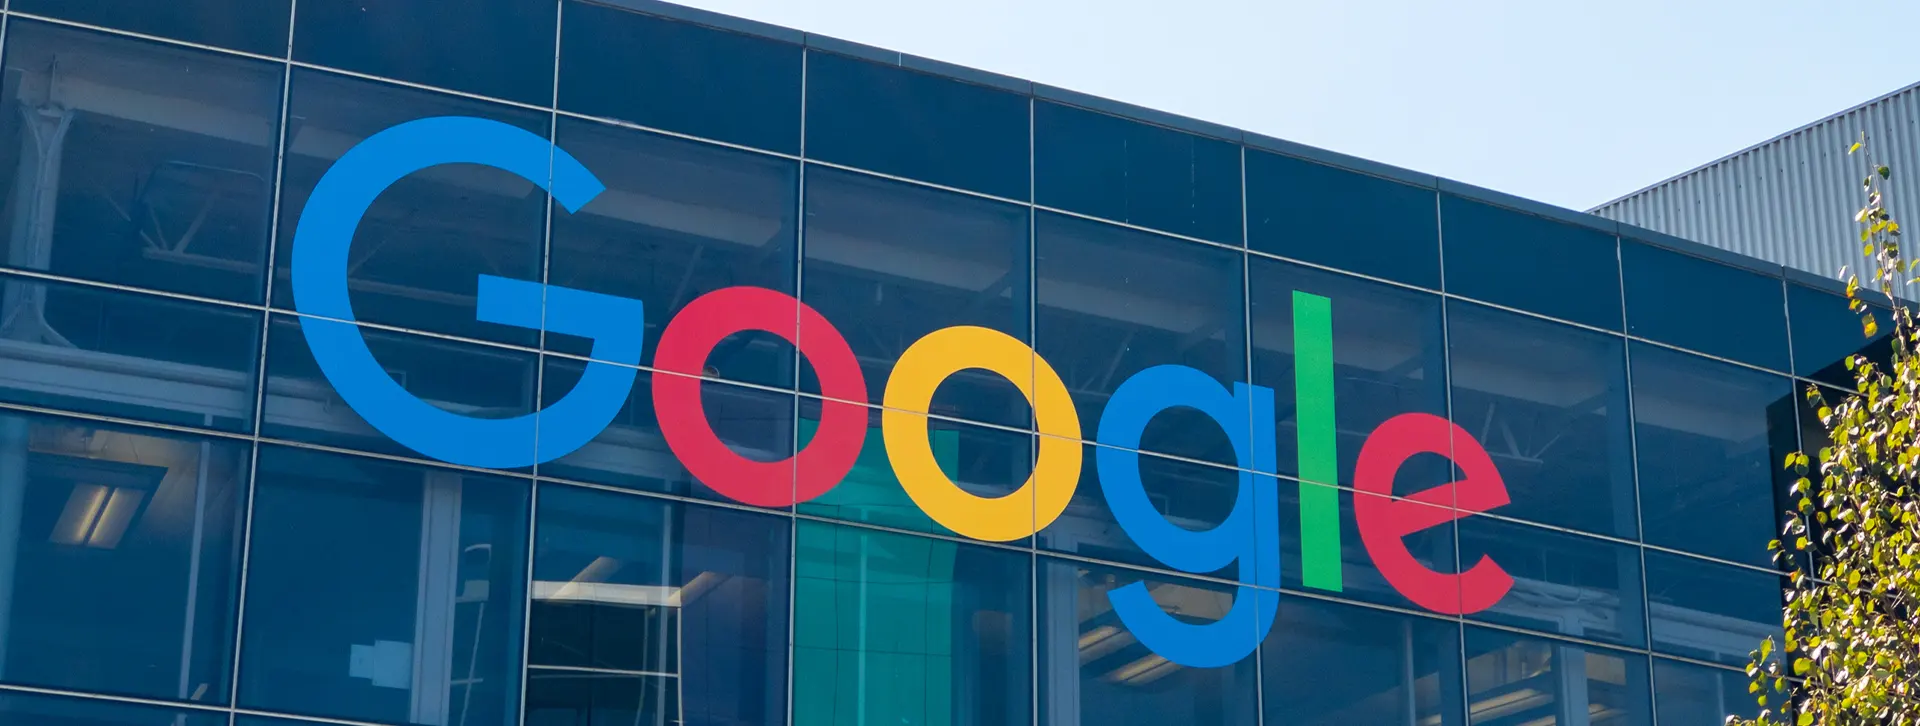 Googlen osake tarjoaa vahvaa kasvua maltillisilla arvostuskertoimilla